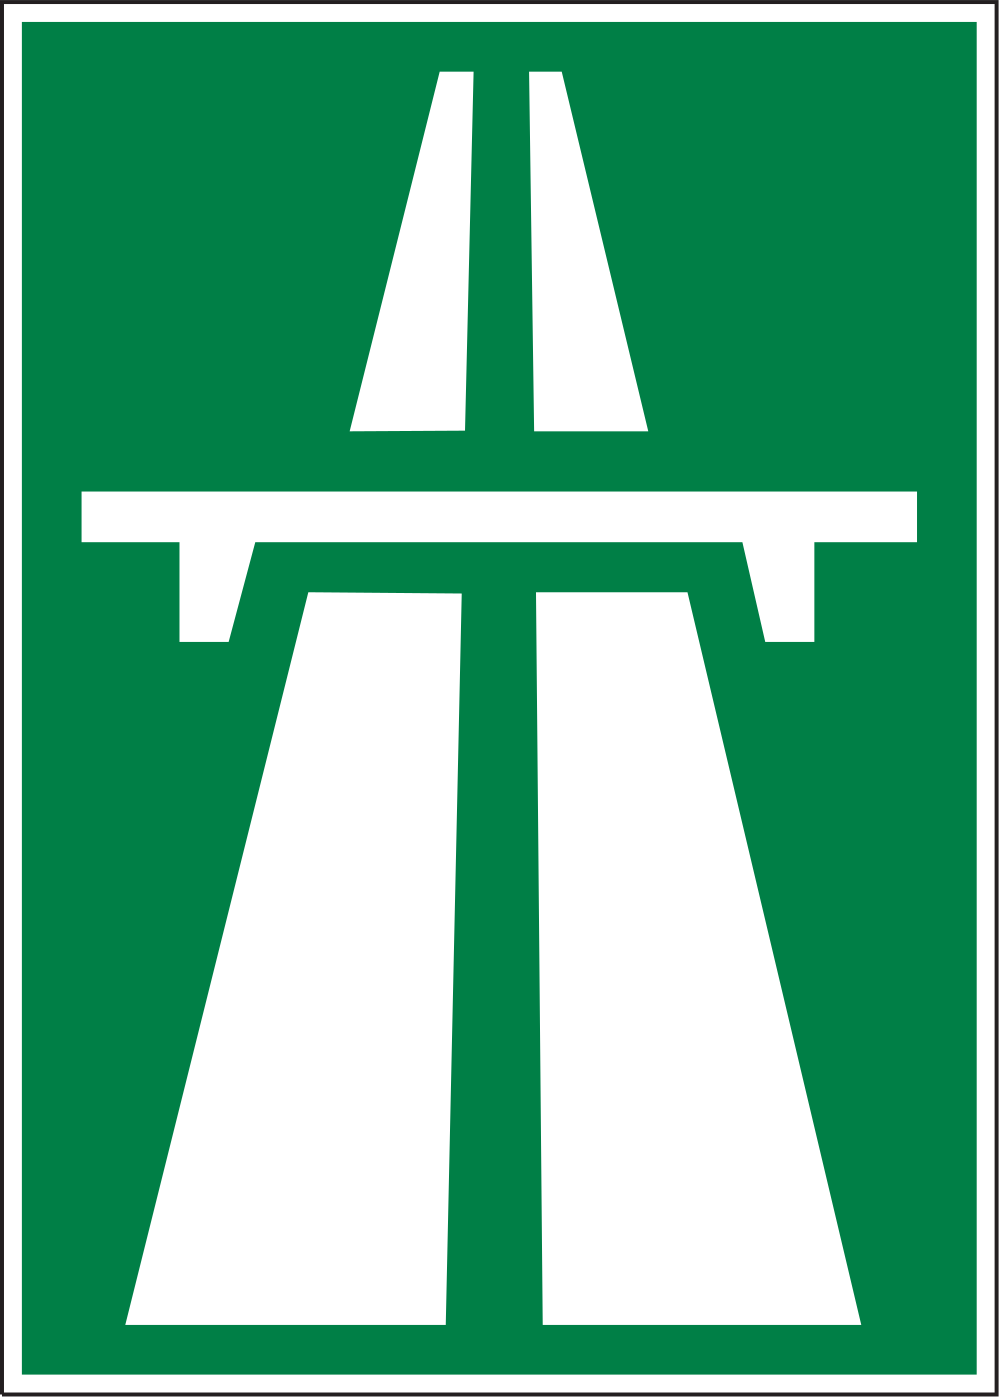 Autobahn West